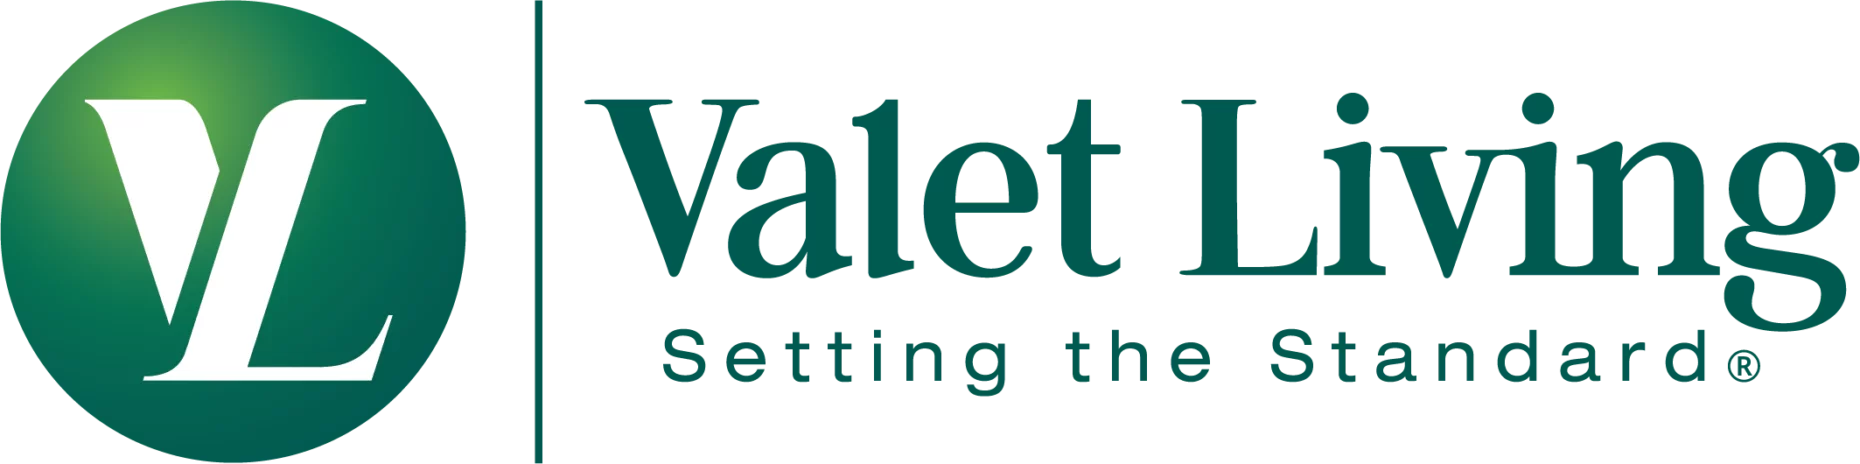 Valet Living logo